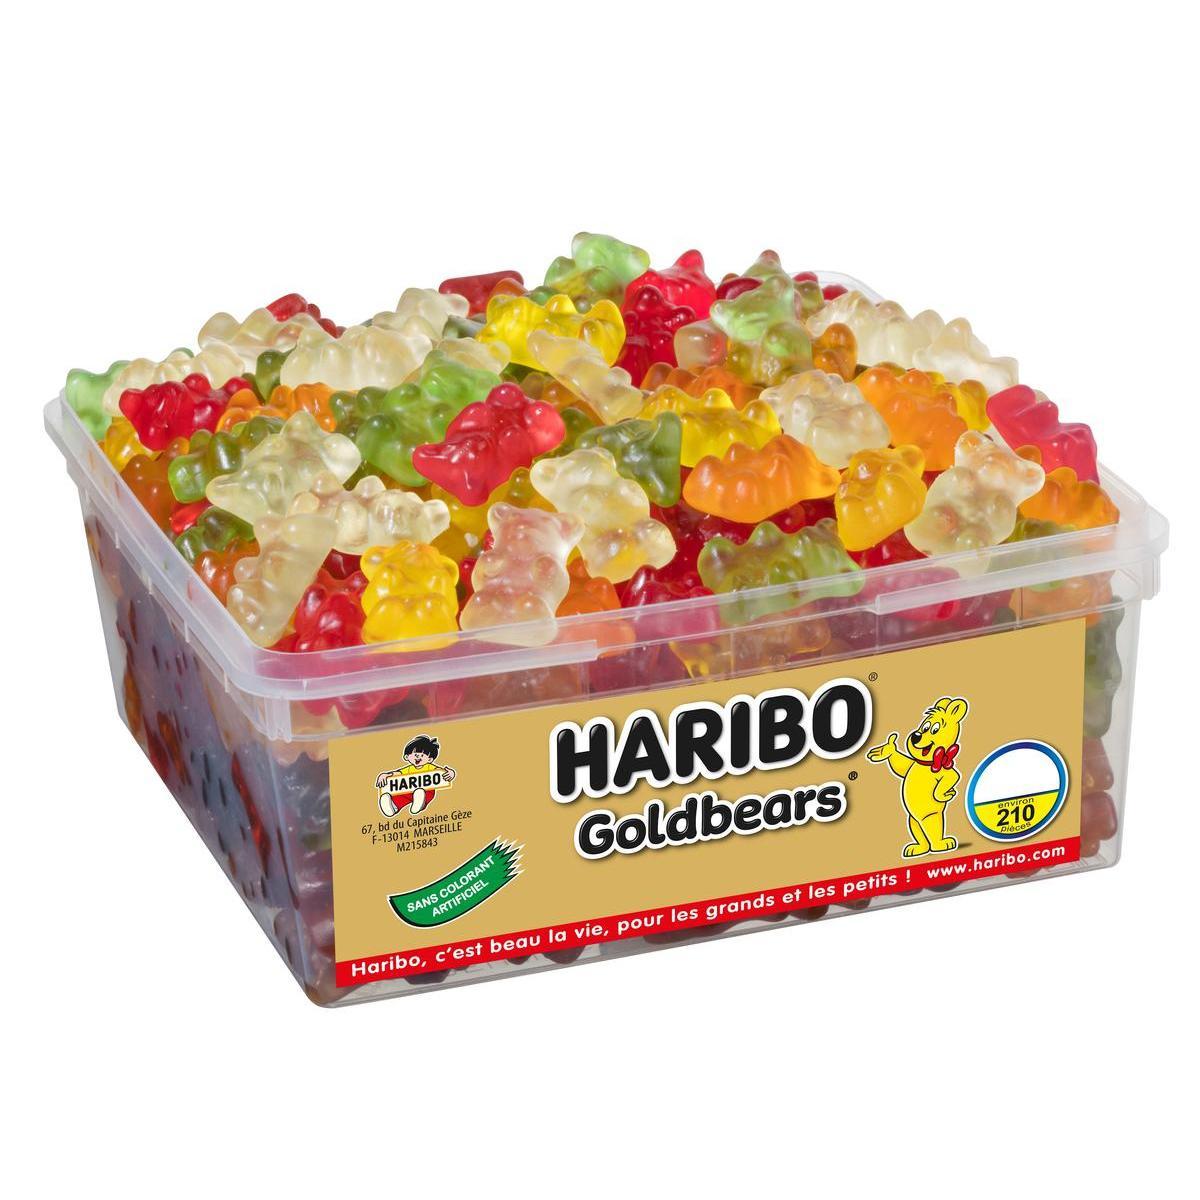 Boîte de 210 bonbons Goldbears - HARIBO